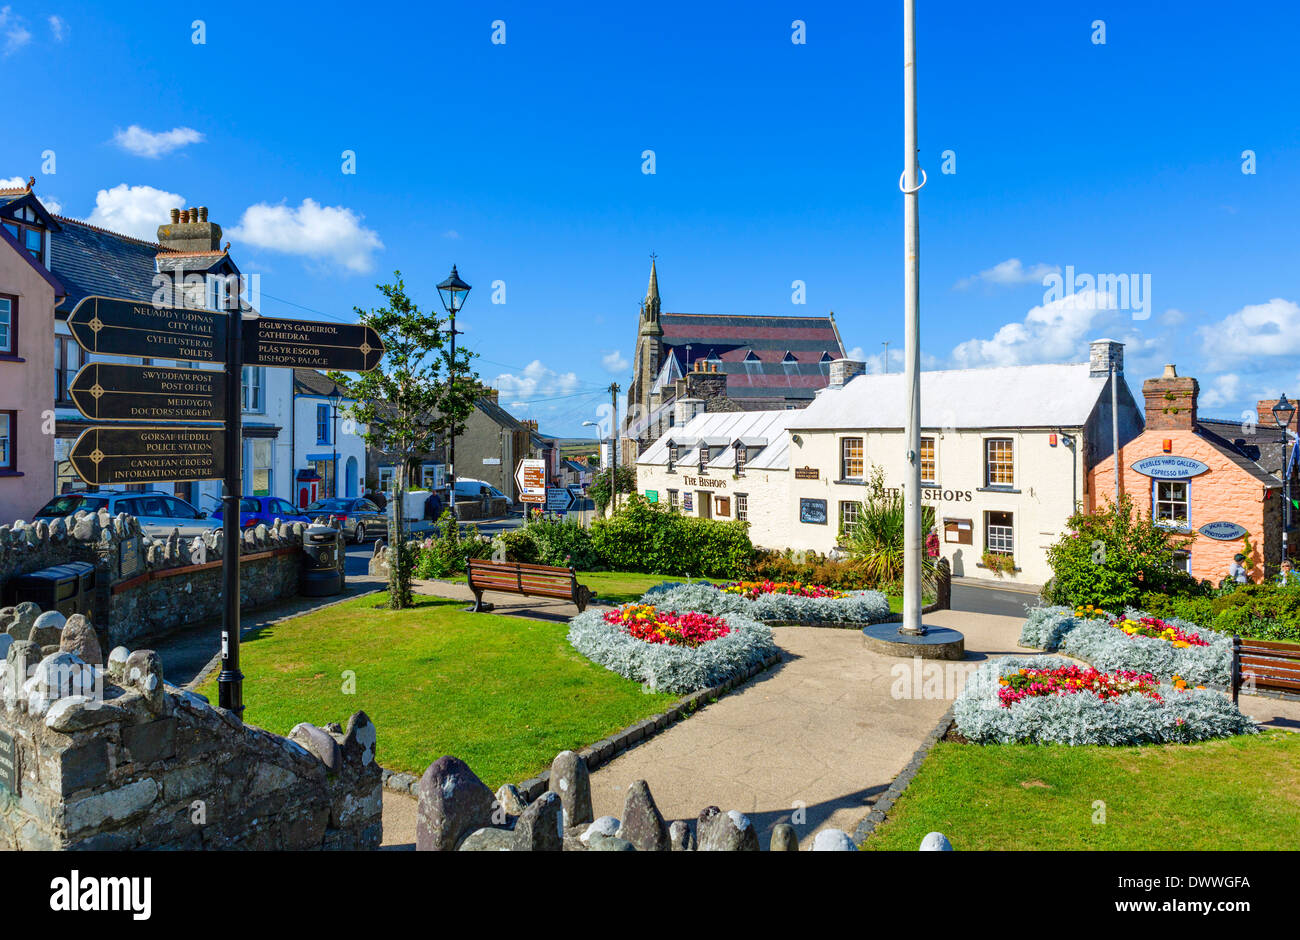 Attraversare piazza nel centro della città cattedrale di St David's, Pembrokeshire, Wales, Regno Unito Foto Stock